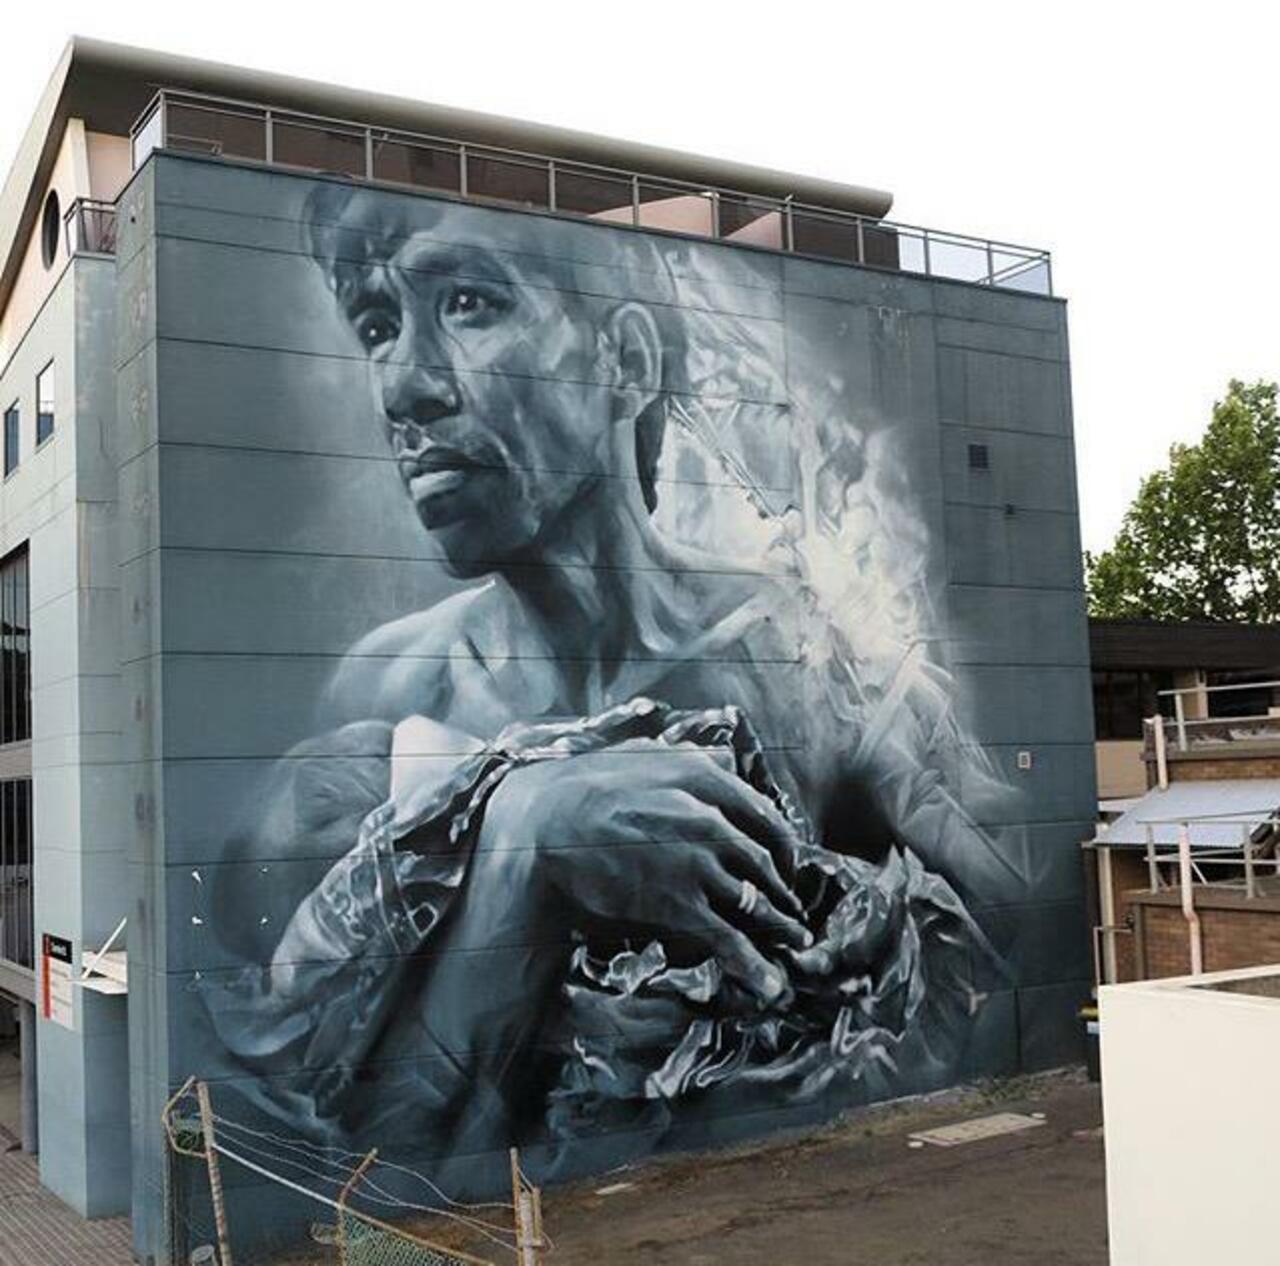 New Street Art by Guido Van Helten in Wollongong Australia 

#art #graffiti #mural #streetart http://t.co/tcHScoLTlj